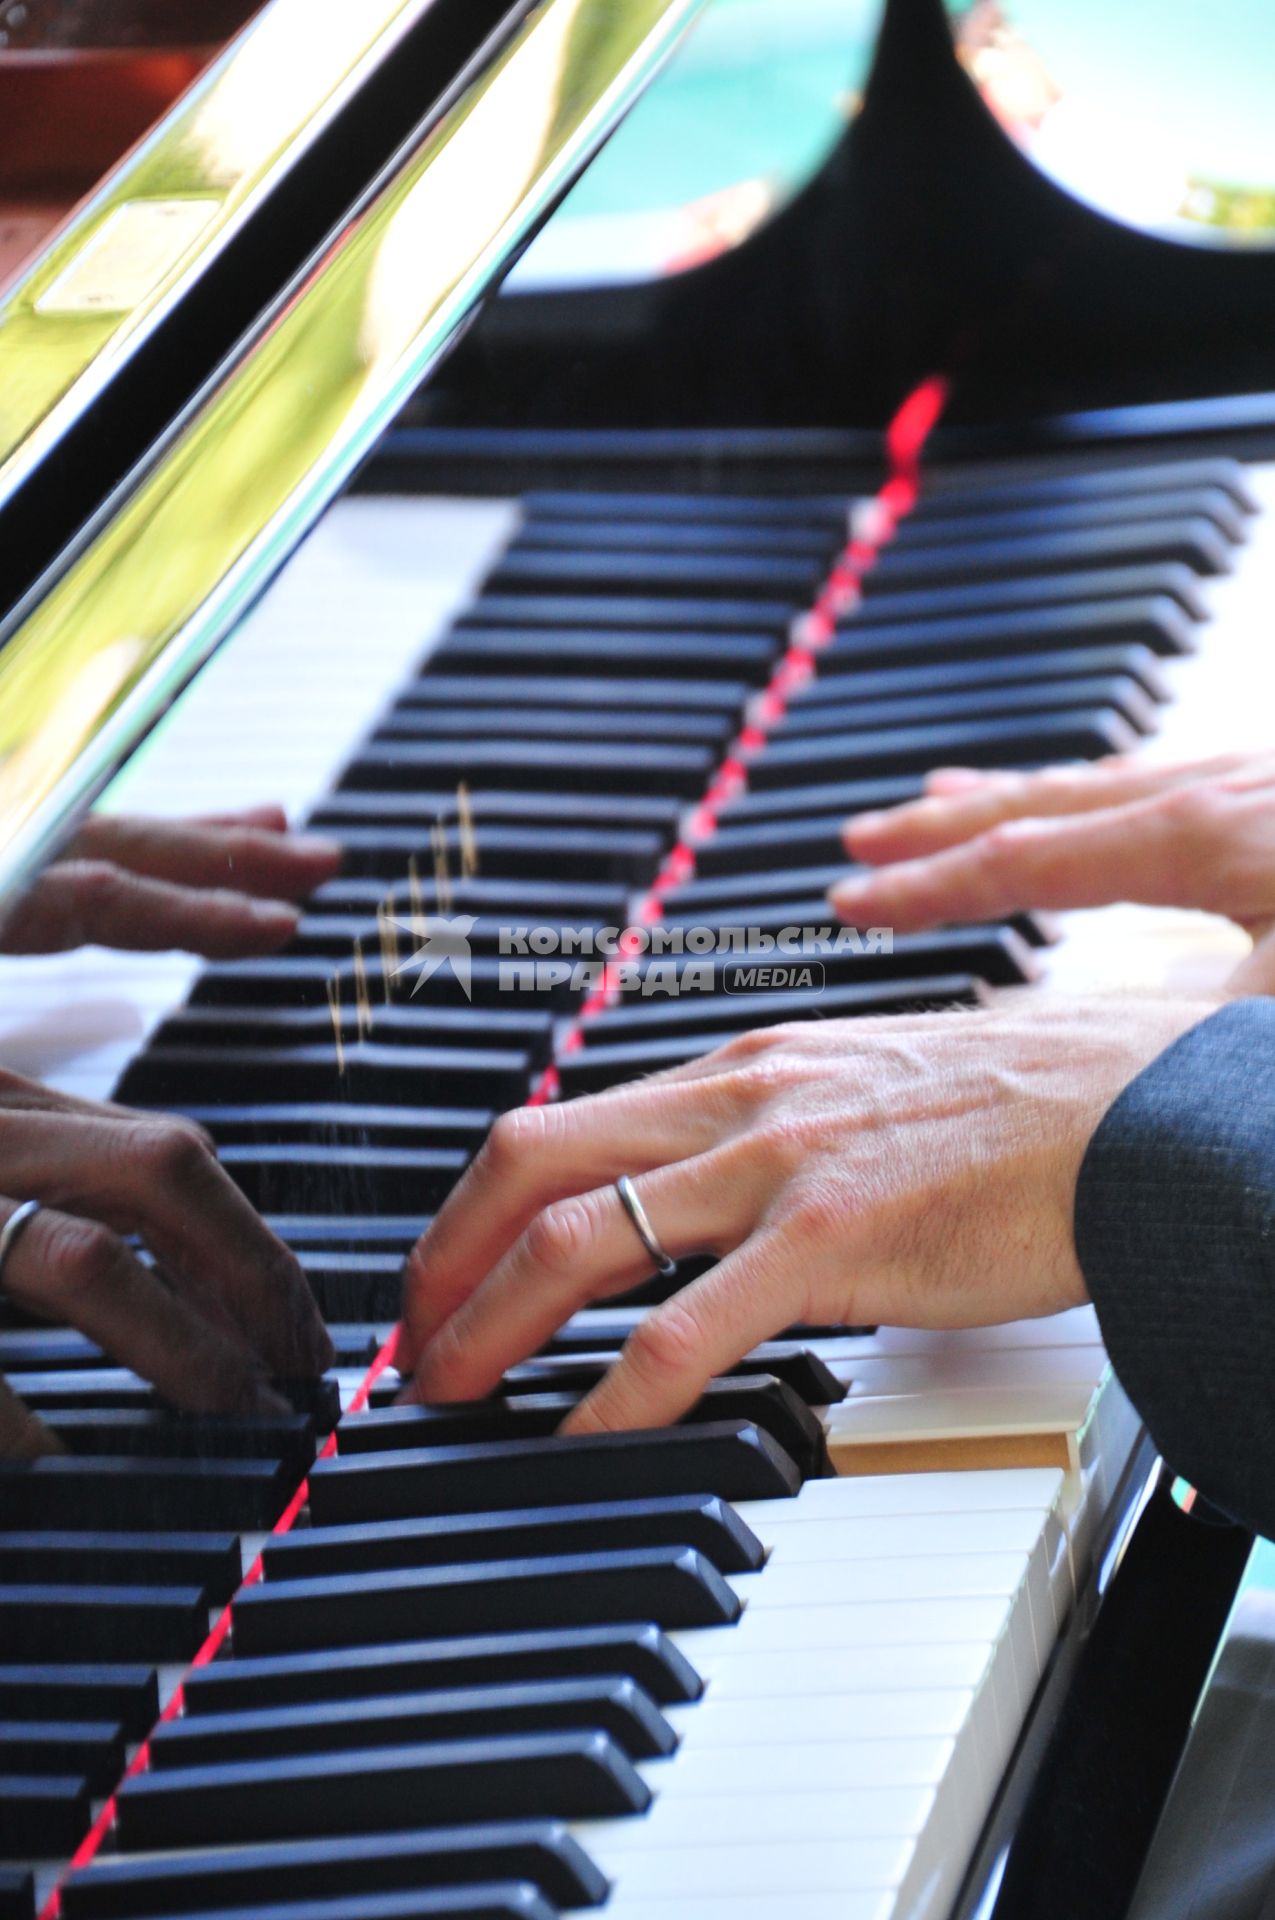 XV Московский международный фестиваль `Джаз в саду Эрмитаж`. На снимке: руки пианиста.